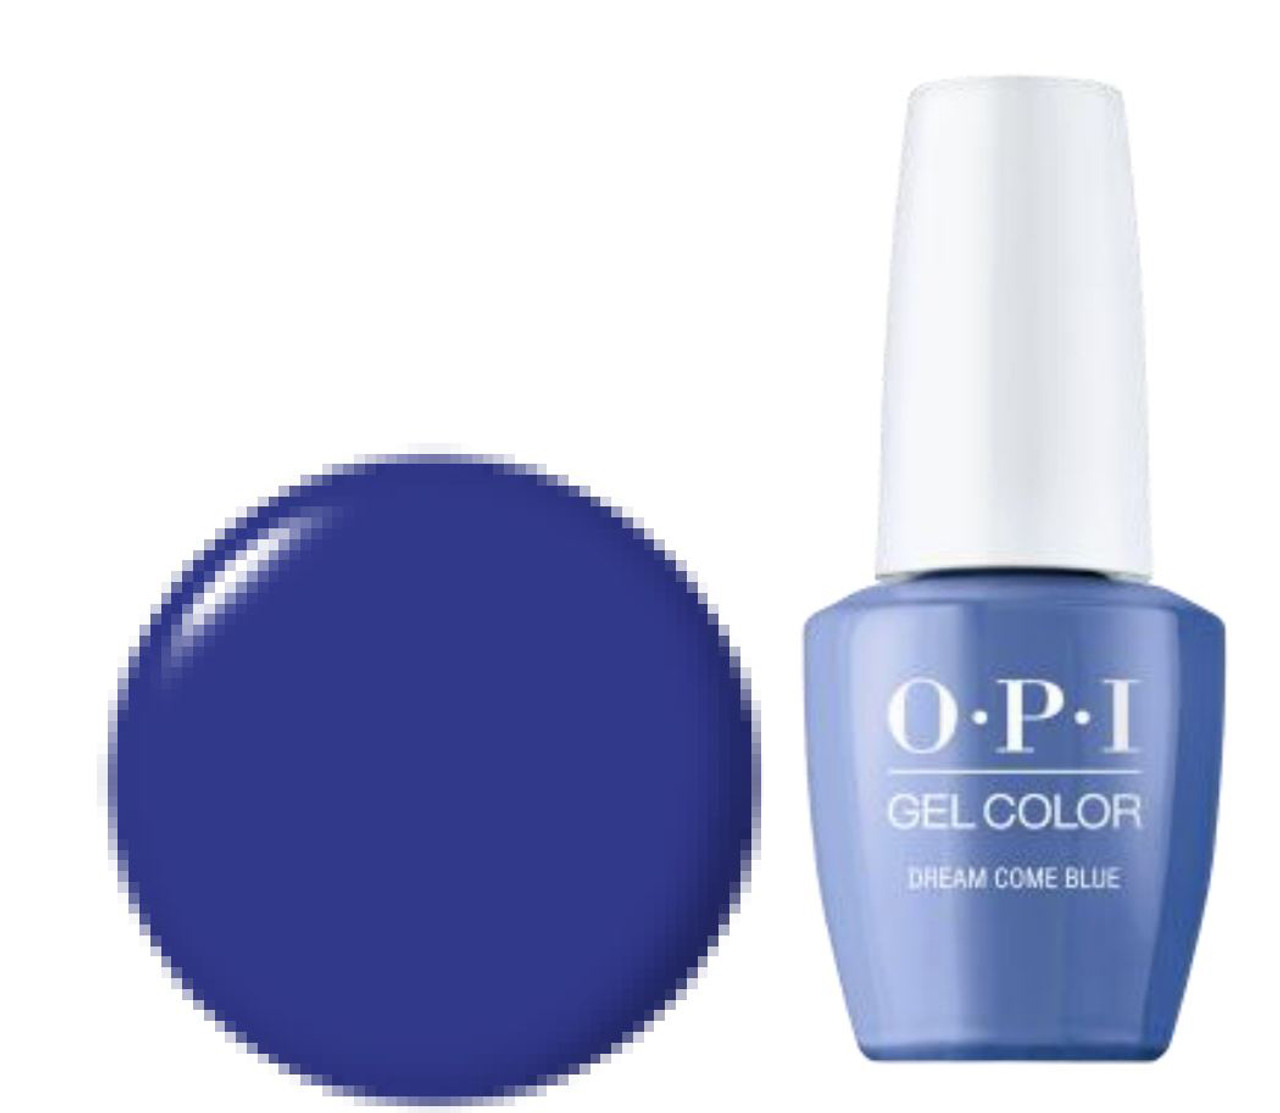 OPI GelColor Dream Come Blue - .5 Oz / 15 mL